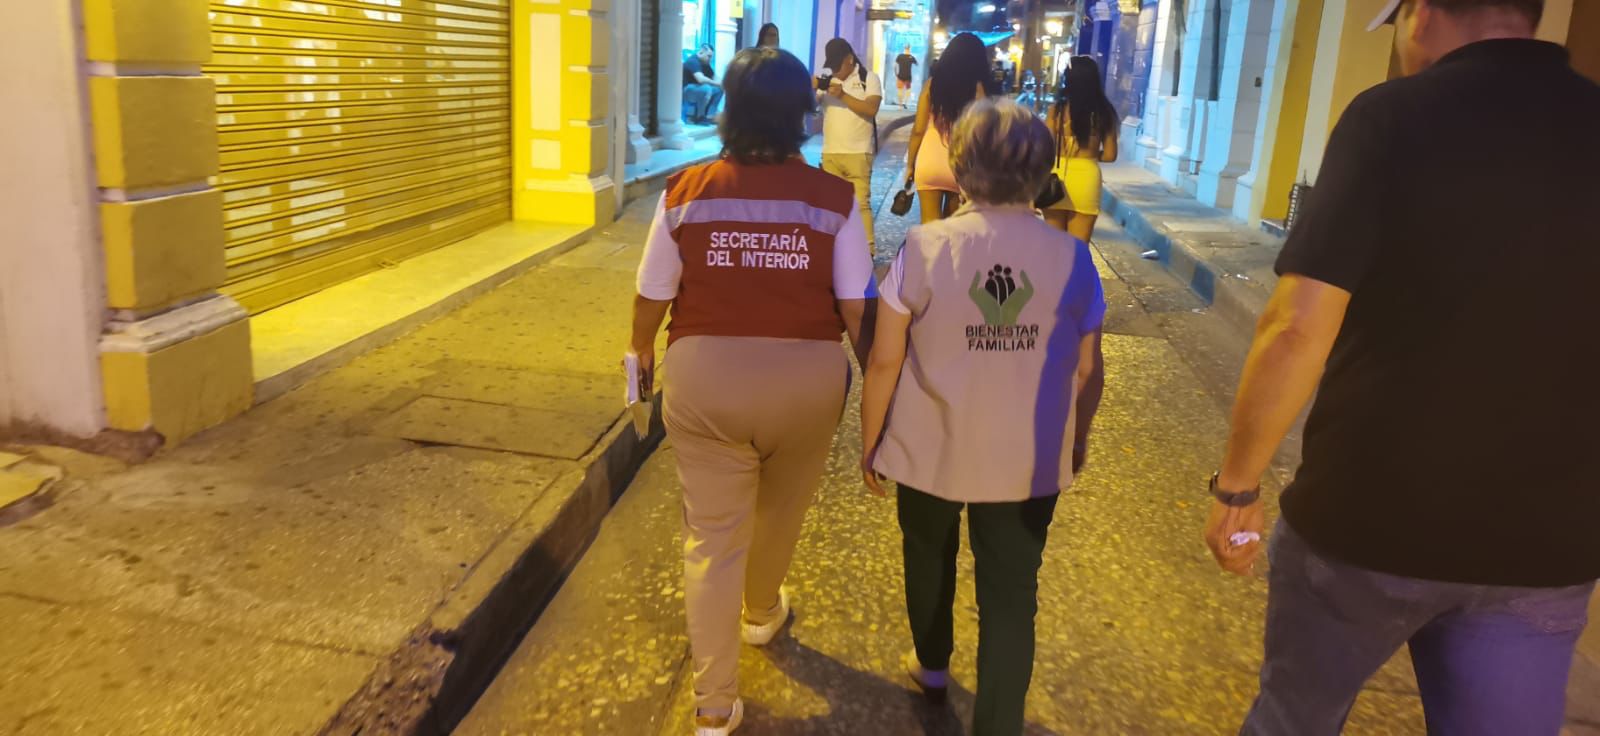 ICBF desarrolla jornadas para prevenir la explotación sexual comercial de la niñez en Cartagena